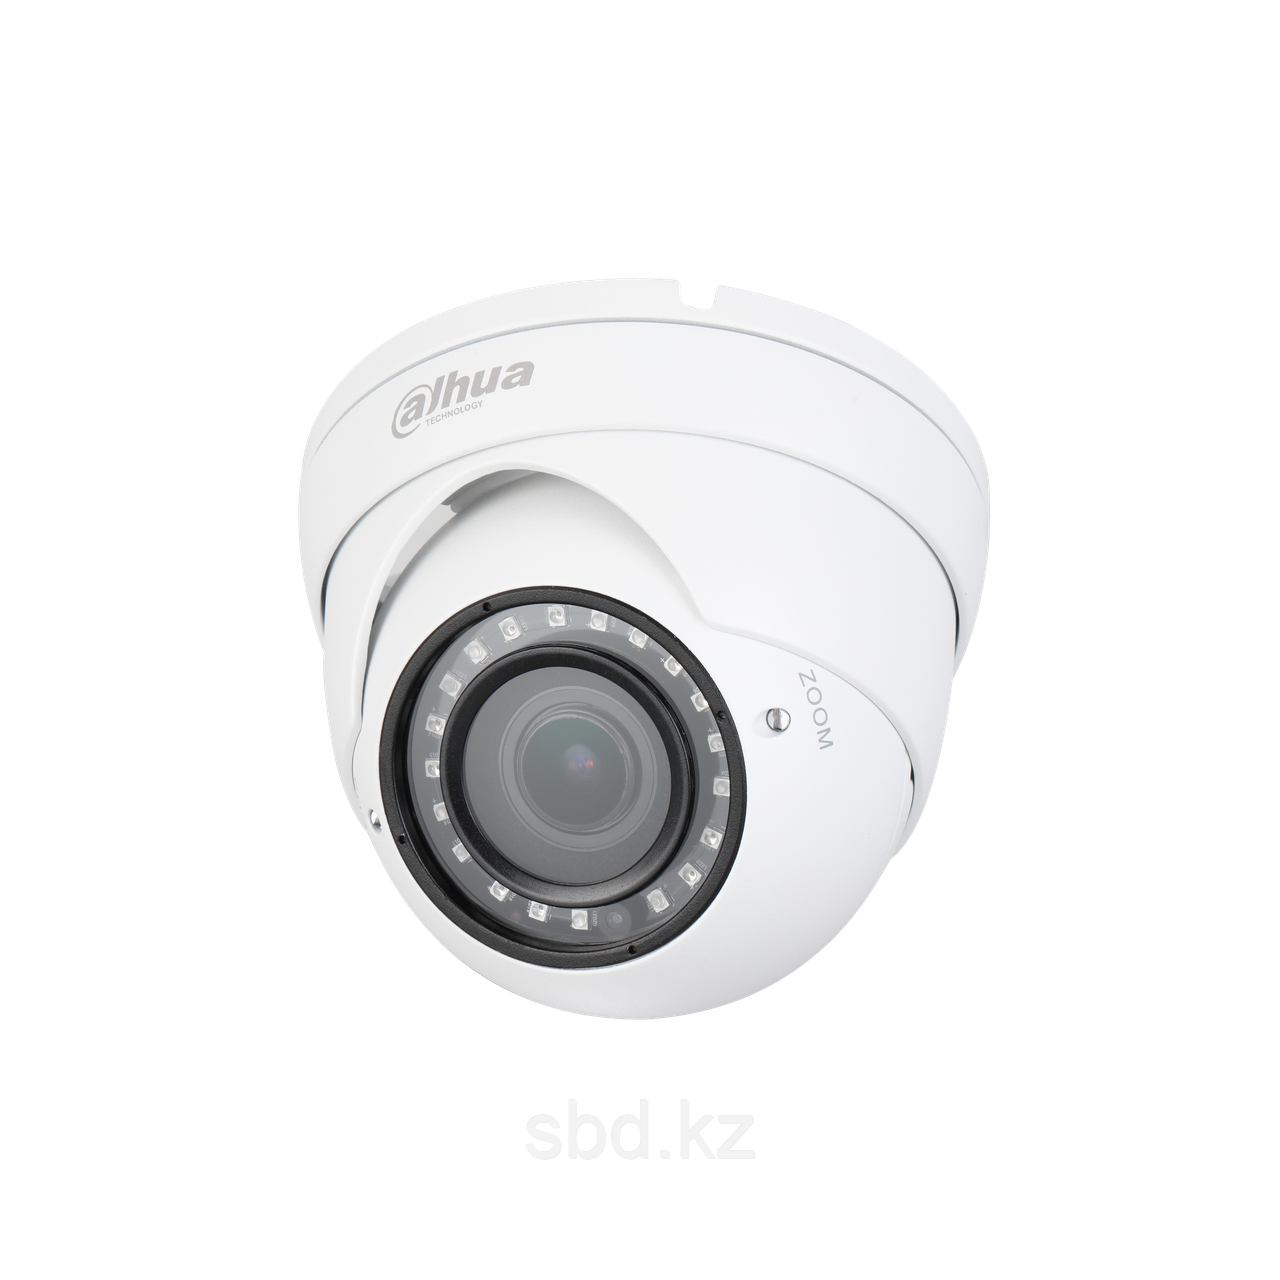 Камера видеонаблюдения внутренняя HAC-HDW1100RP-VF Dahua Technology